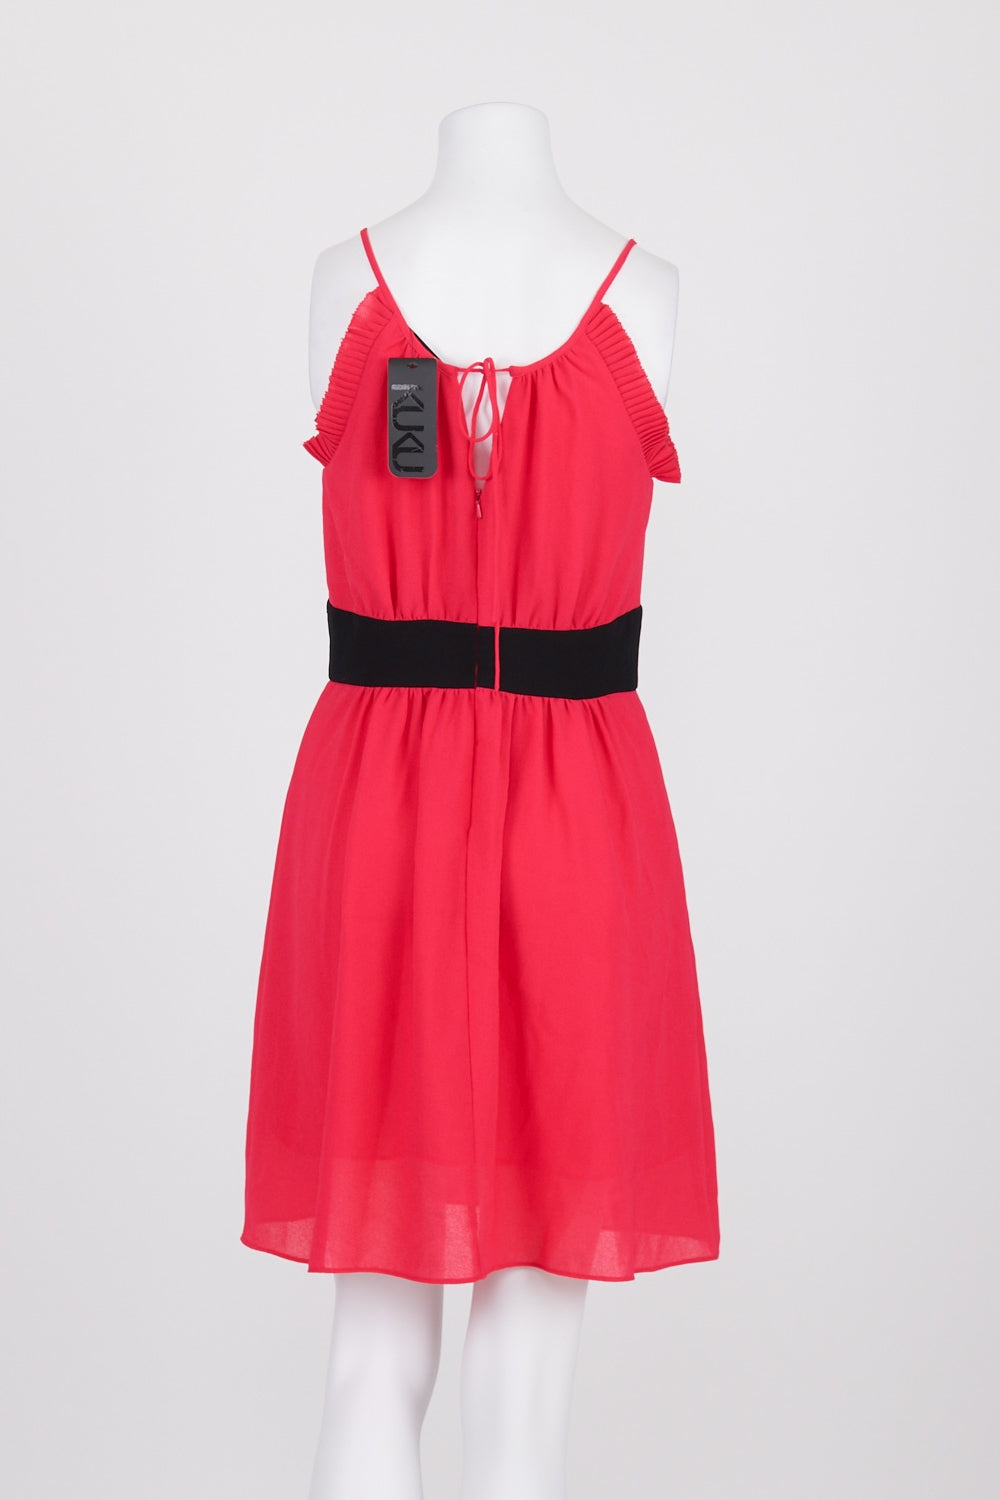 Kuku Pink Mini Dress 10